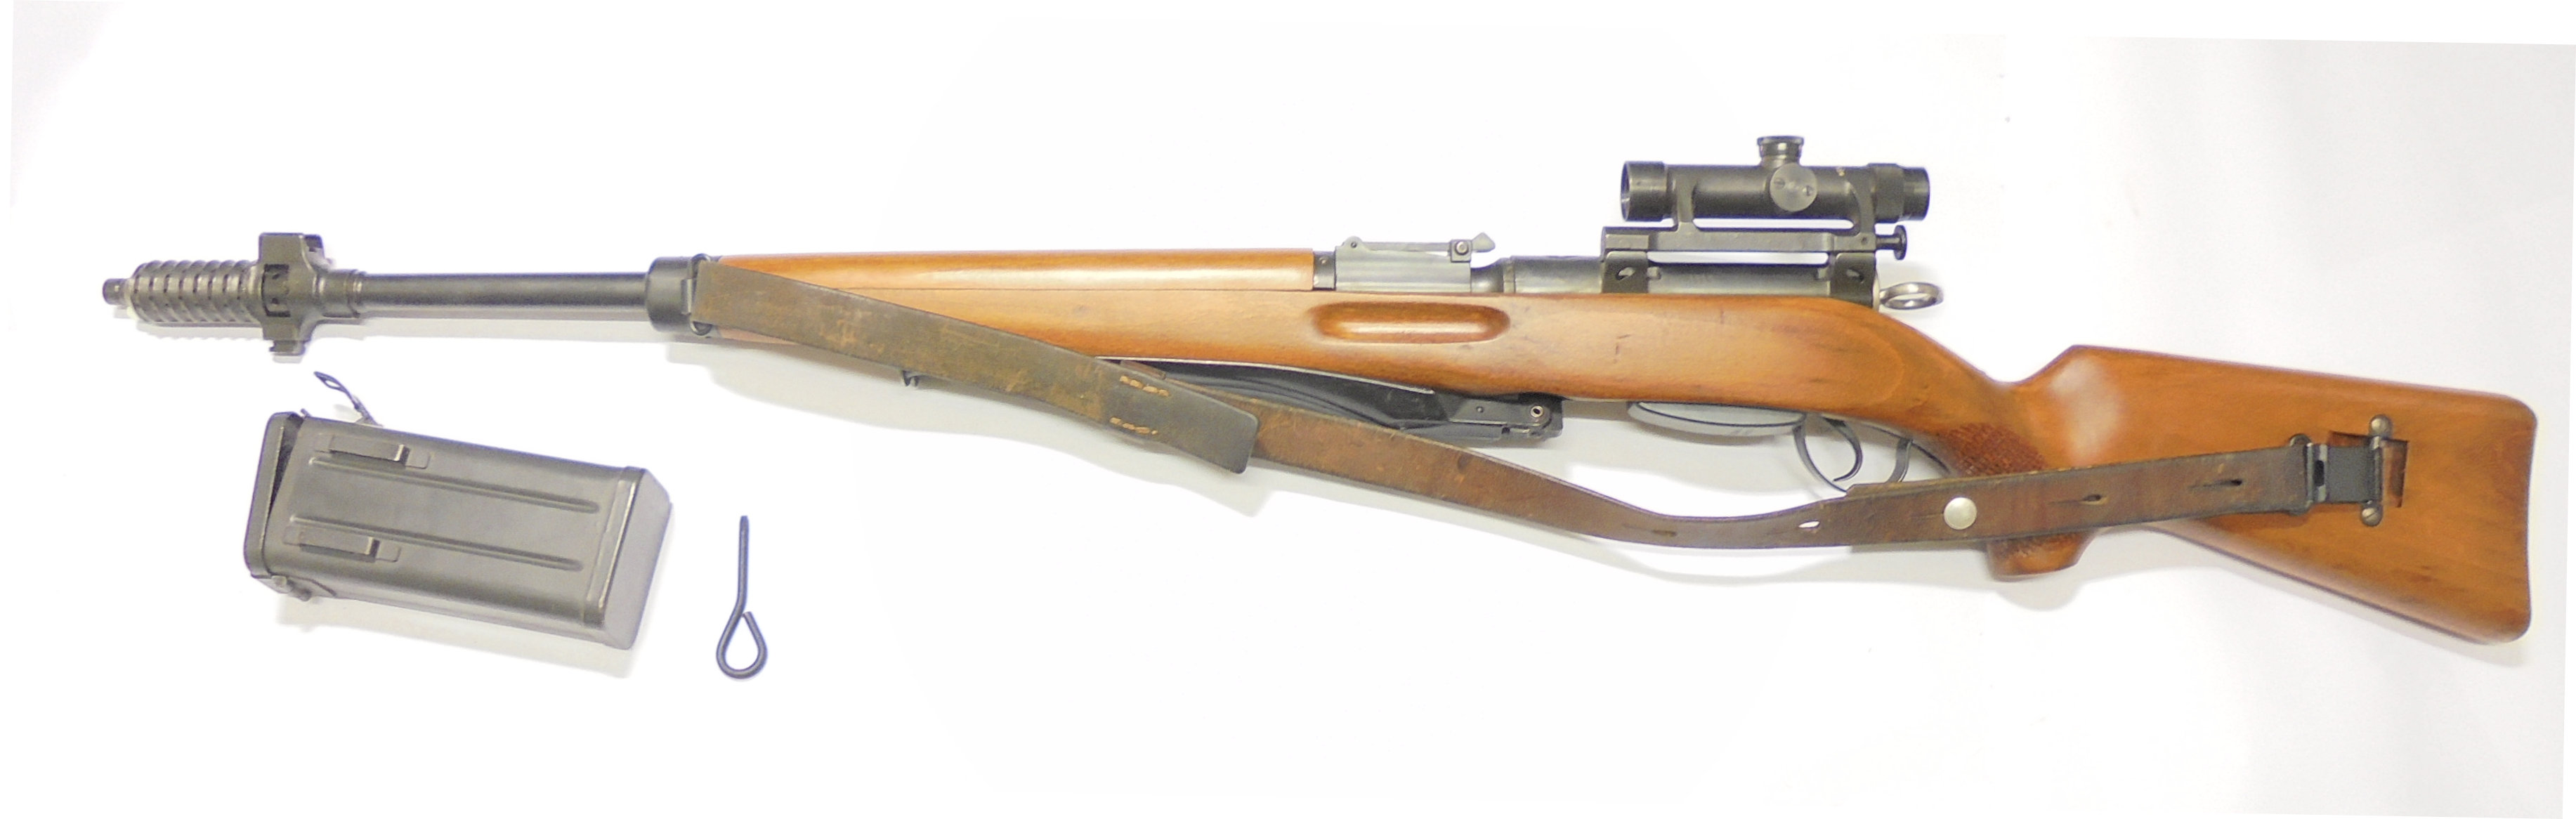 ZFK55 (ZielFernrohr Karabiner 1955) calibre 7.5x55